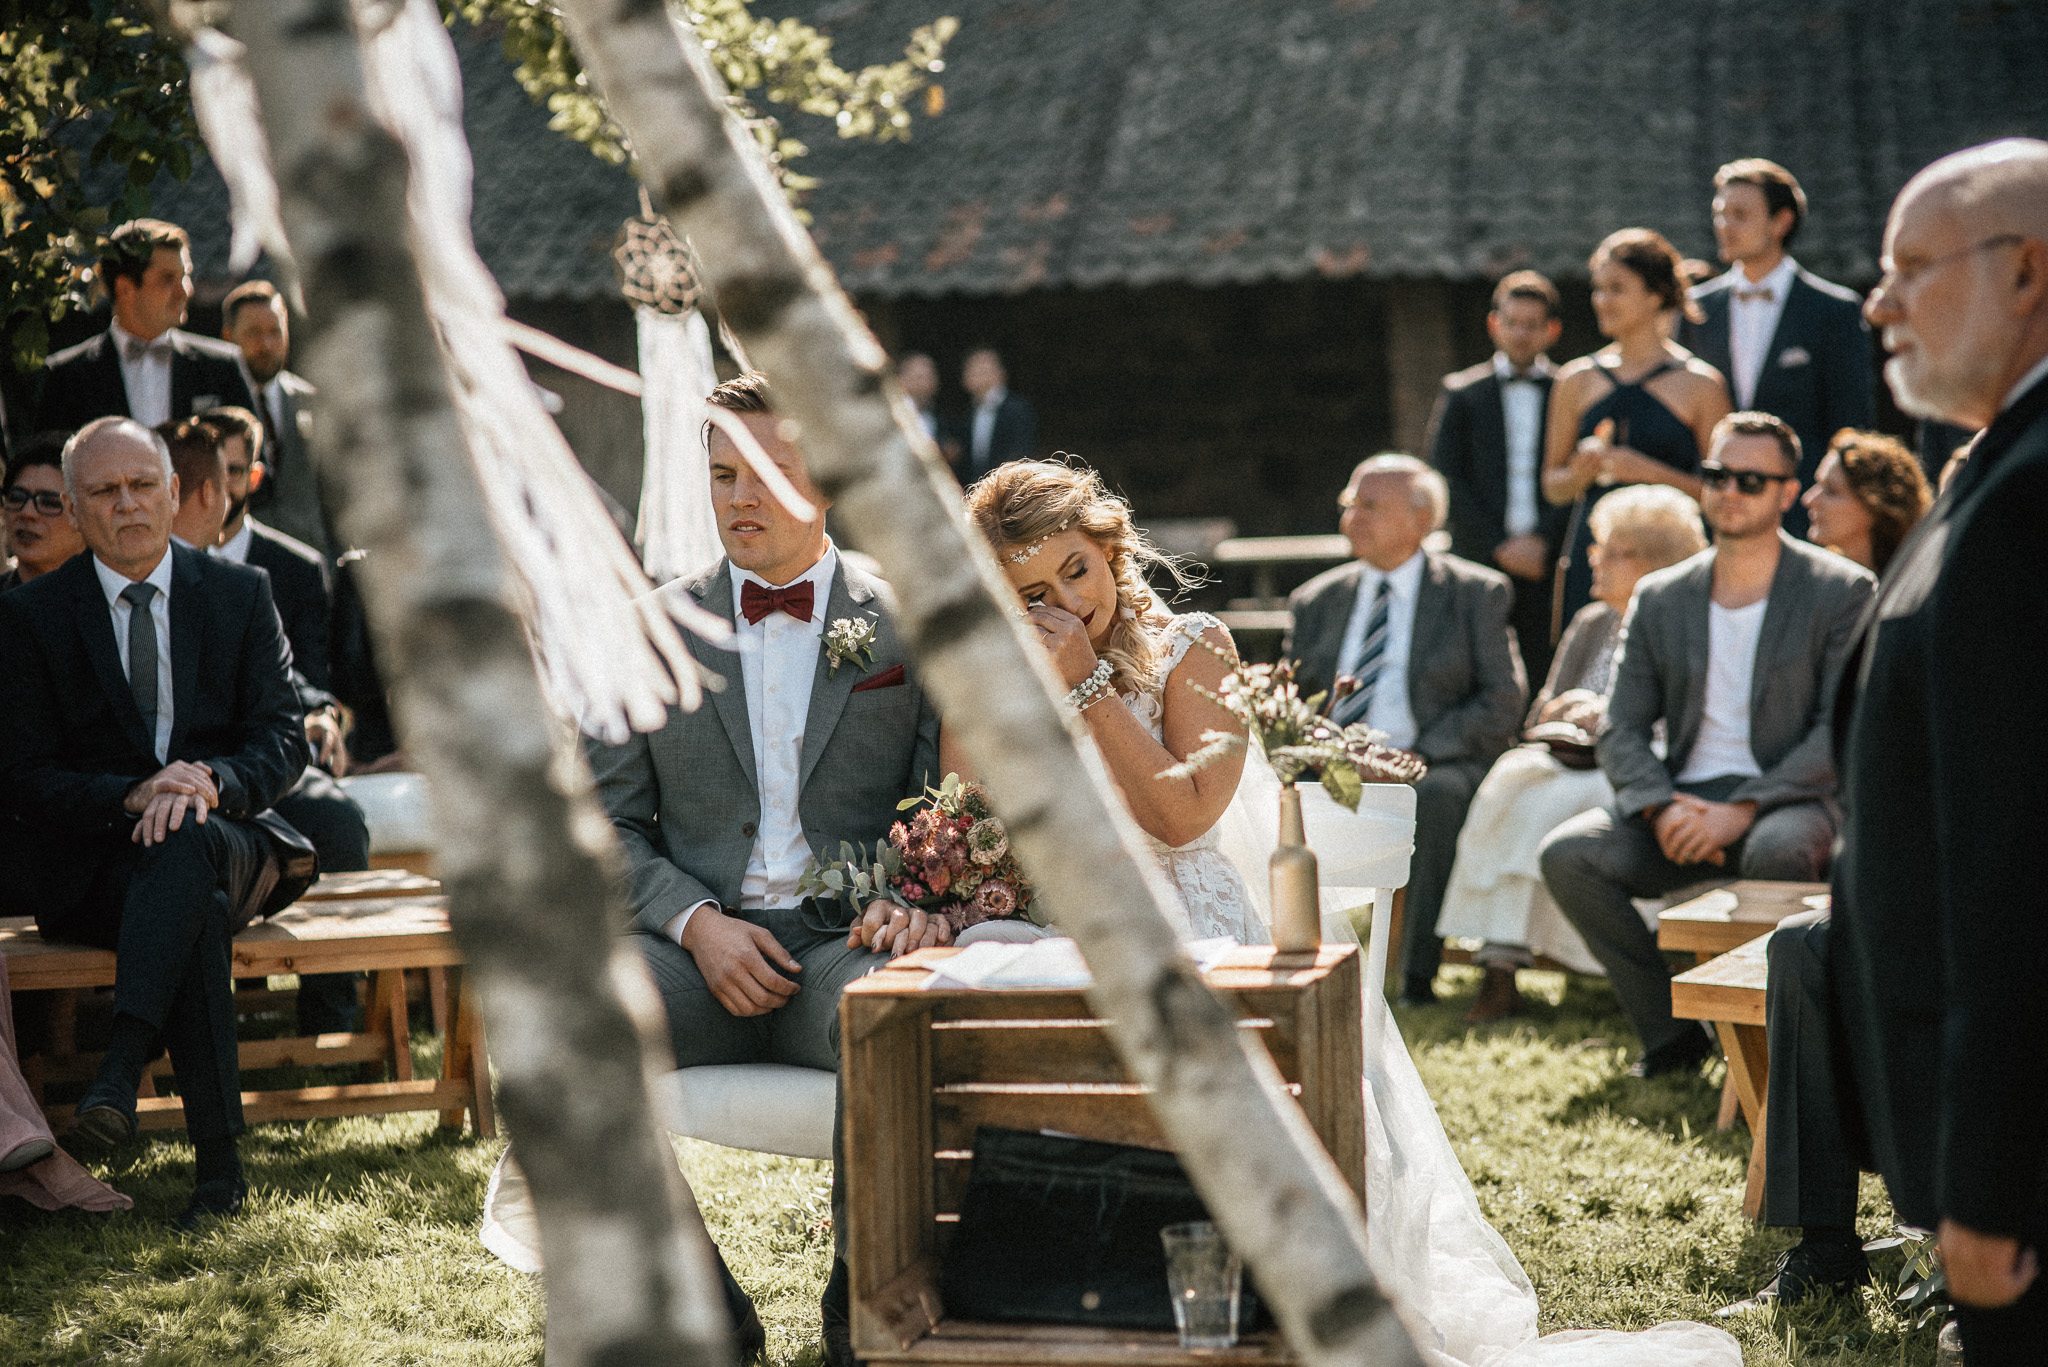 Trauung im Freien - Hochzeitsreportage Aachen Gianna und Tobi - Timo Hess Fotografie 